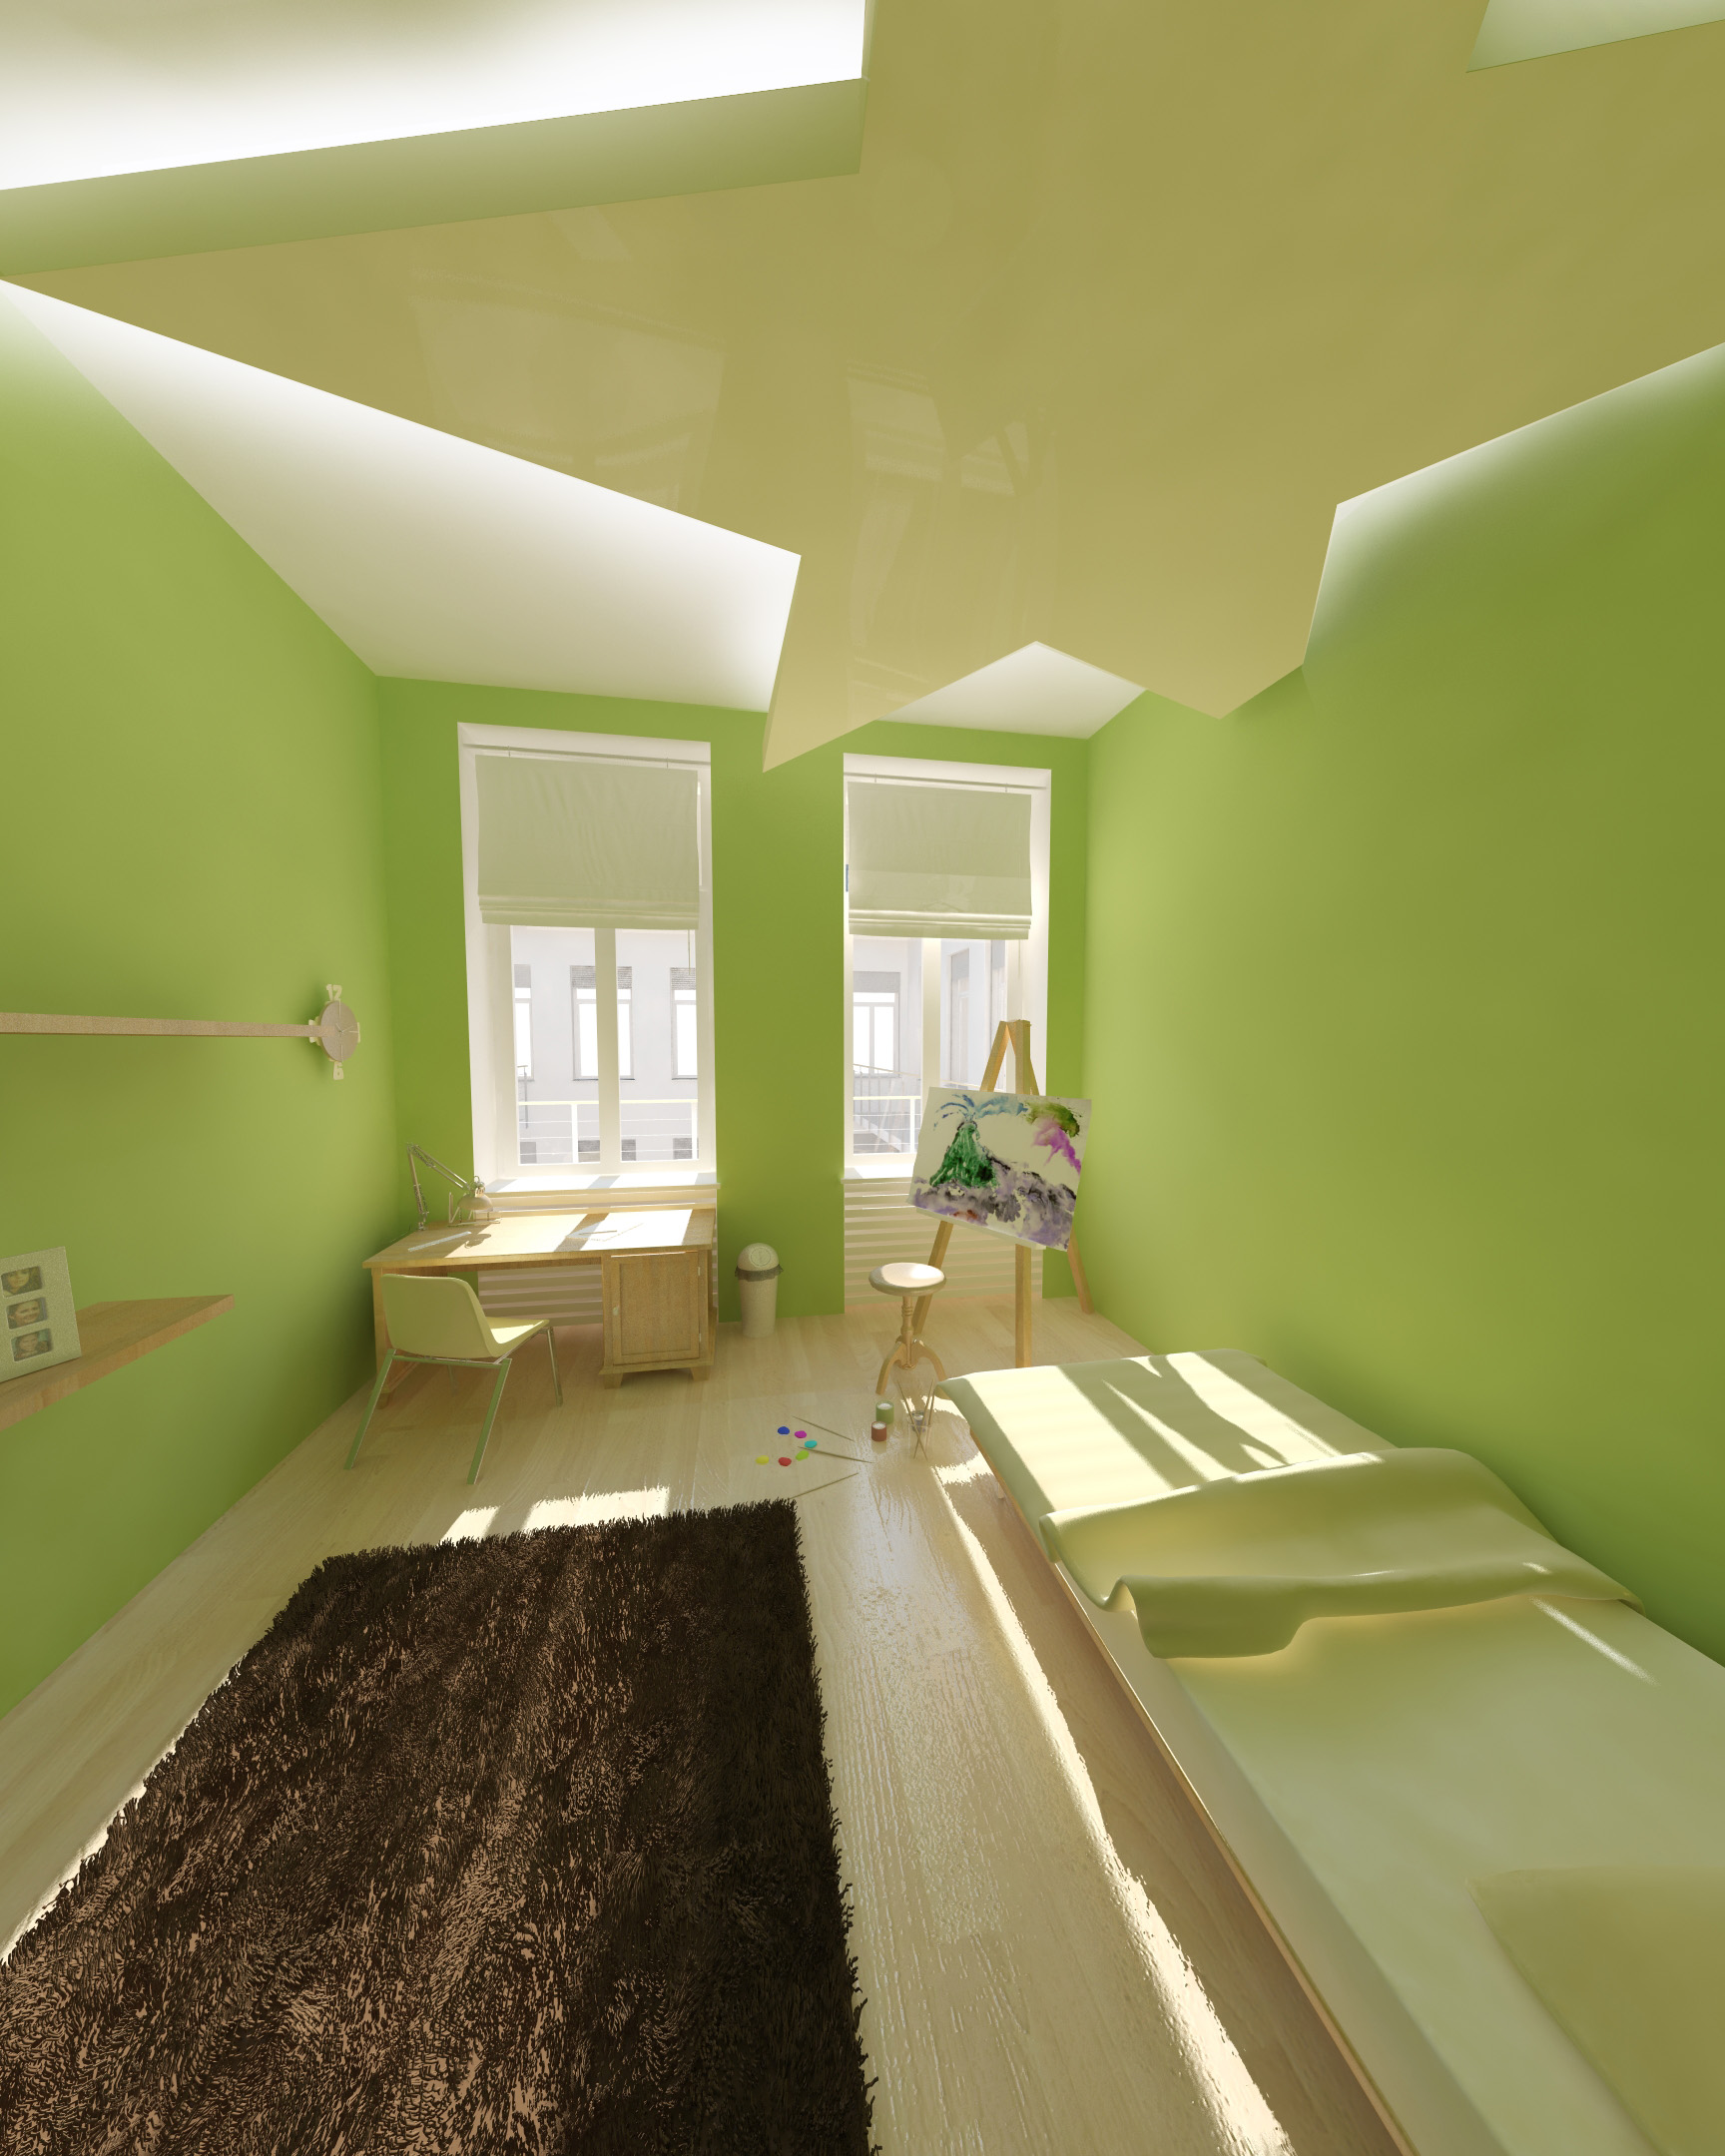 Gyerekszoba- látványterv / Room for kids - architectural visualization